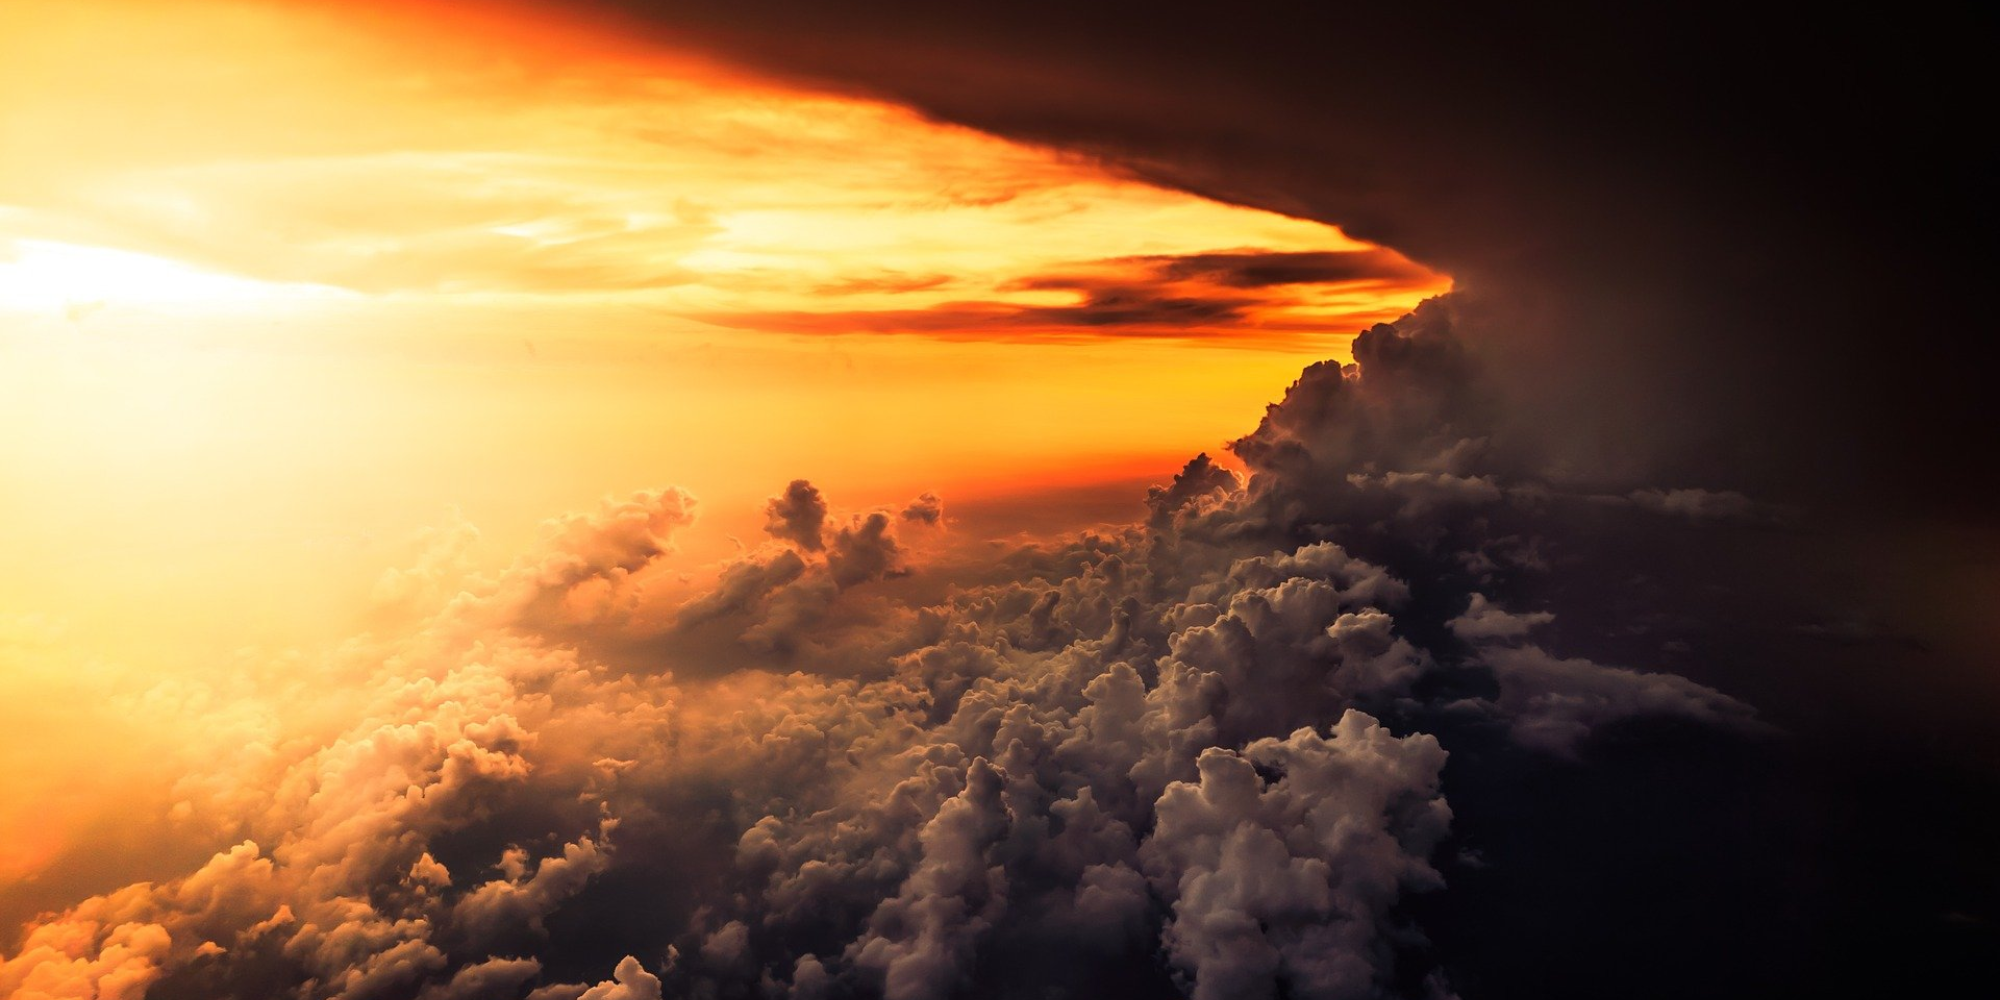 Beitragsbild zu "Qiyāma is coming? Der Jüngste Tag aus theologischer Perspektive" mit der Abbildung eines Sonnenuntergangs in rot-orangen Farben in den Wolken